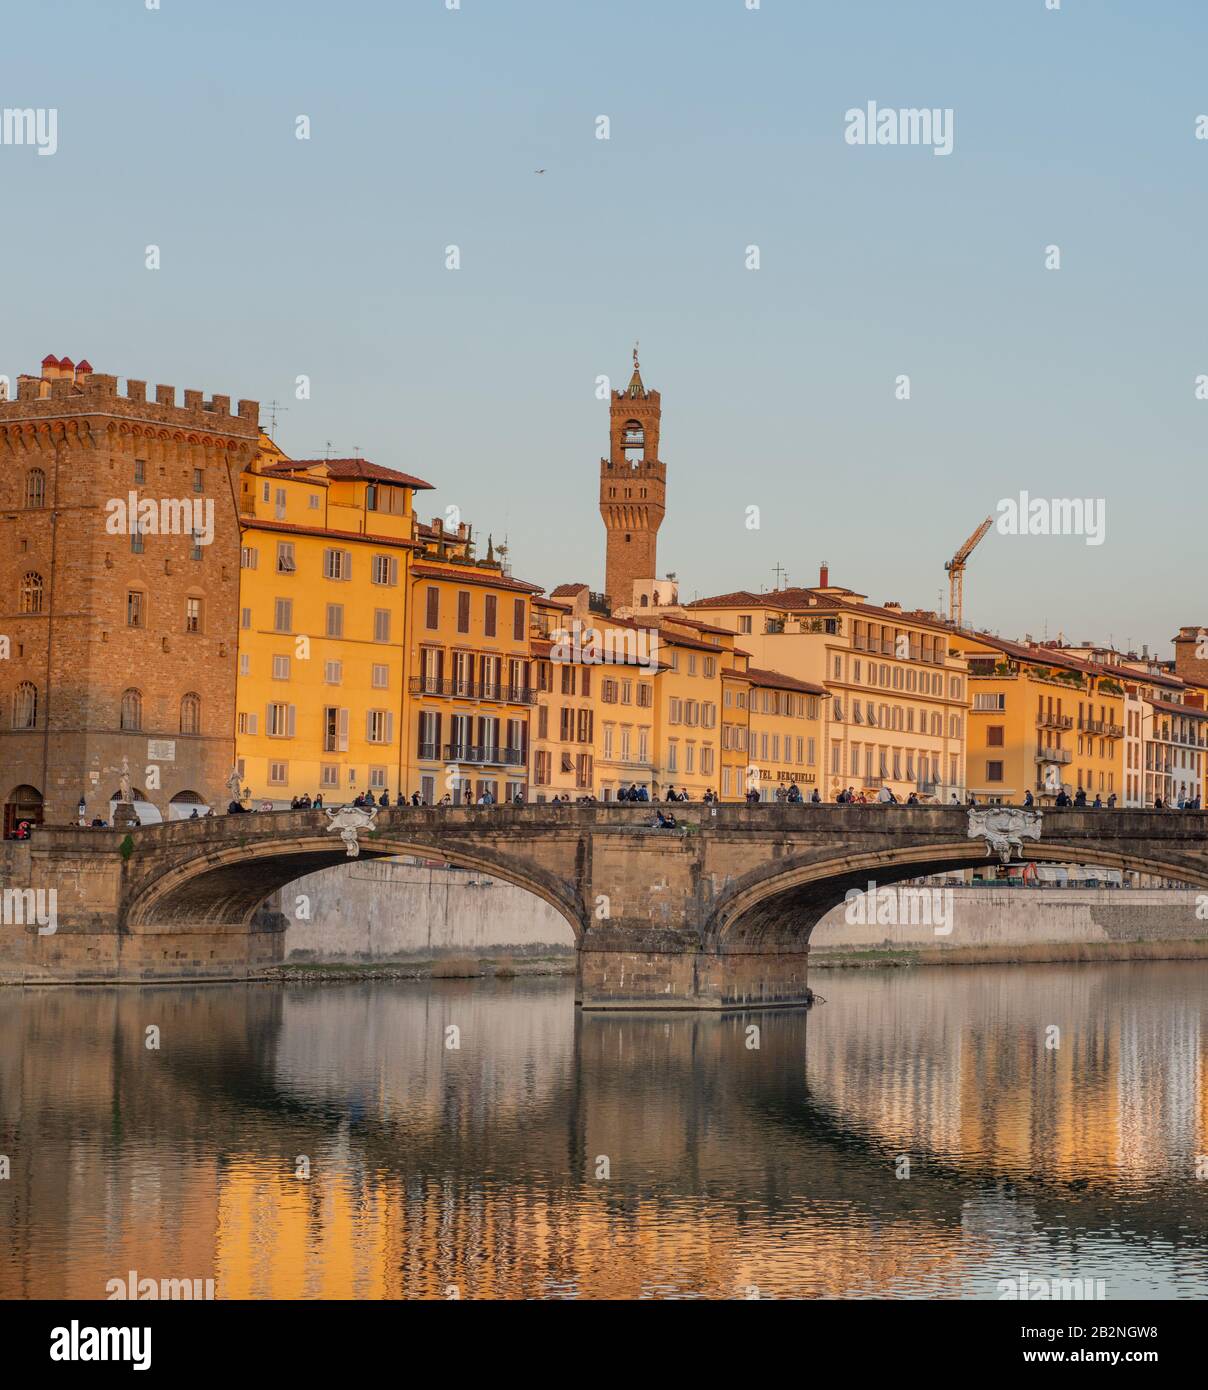 Città di Firenze, ospita molti capolavori dell'arte e dell'architettura rinascimentale Foto Stock